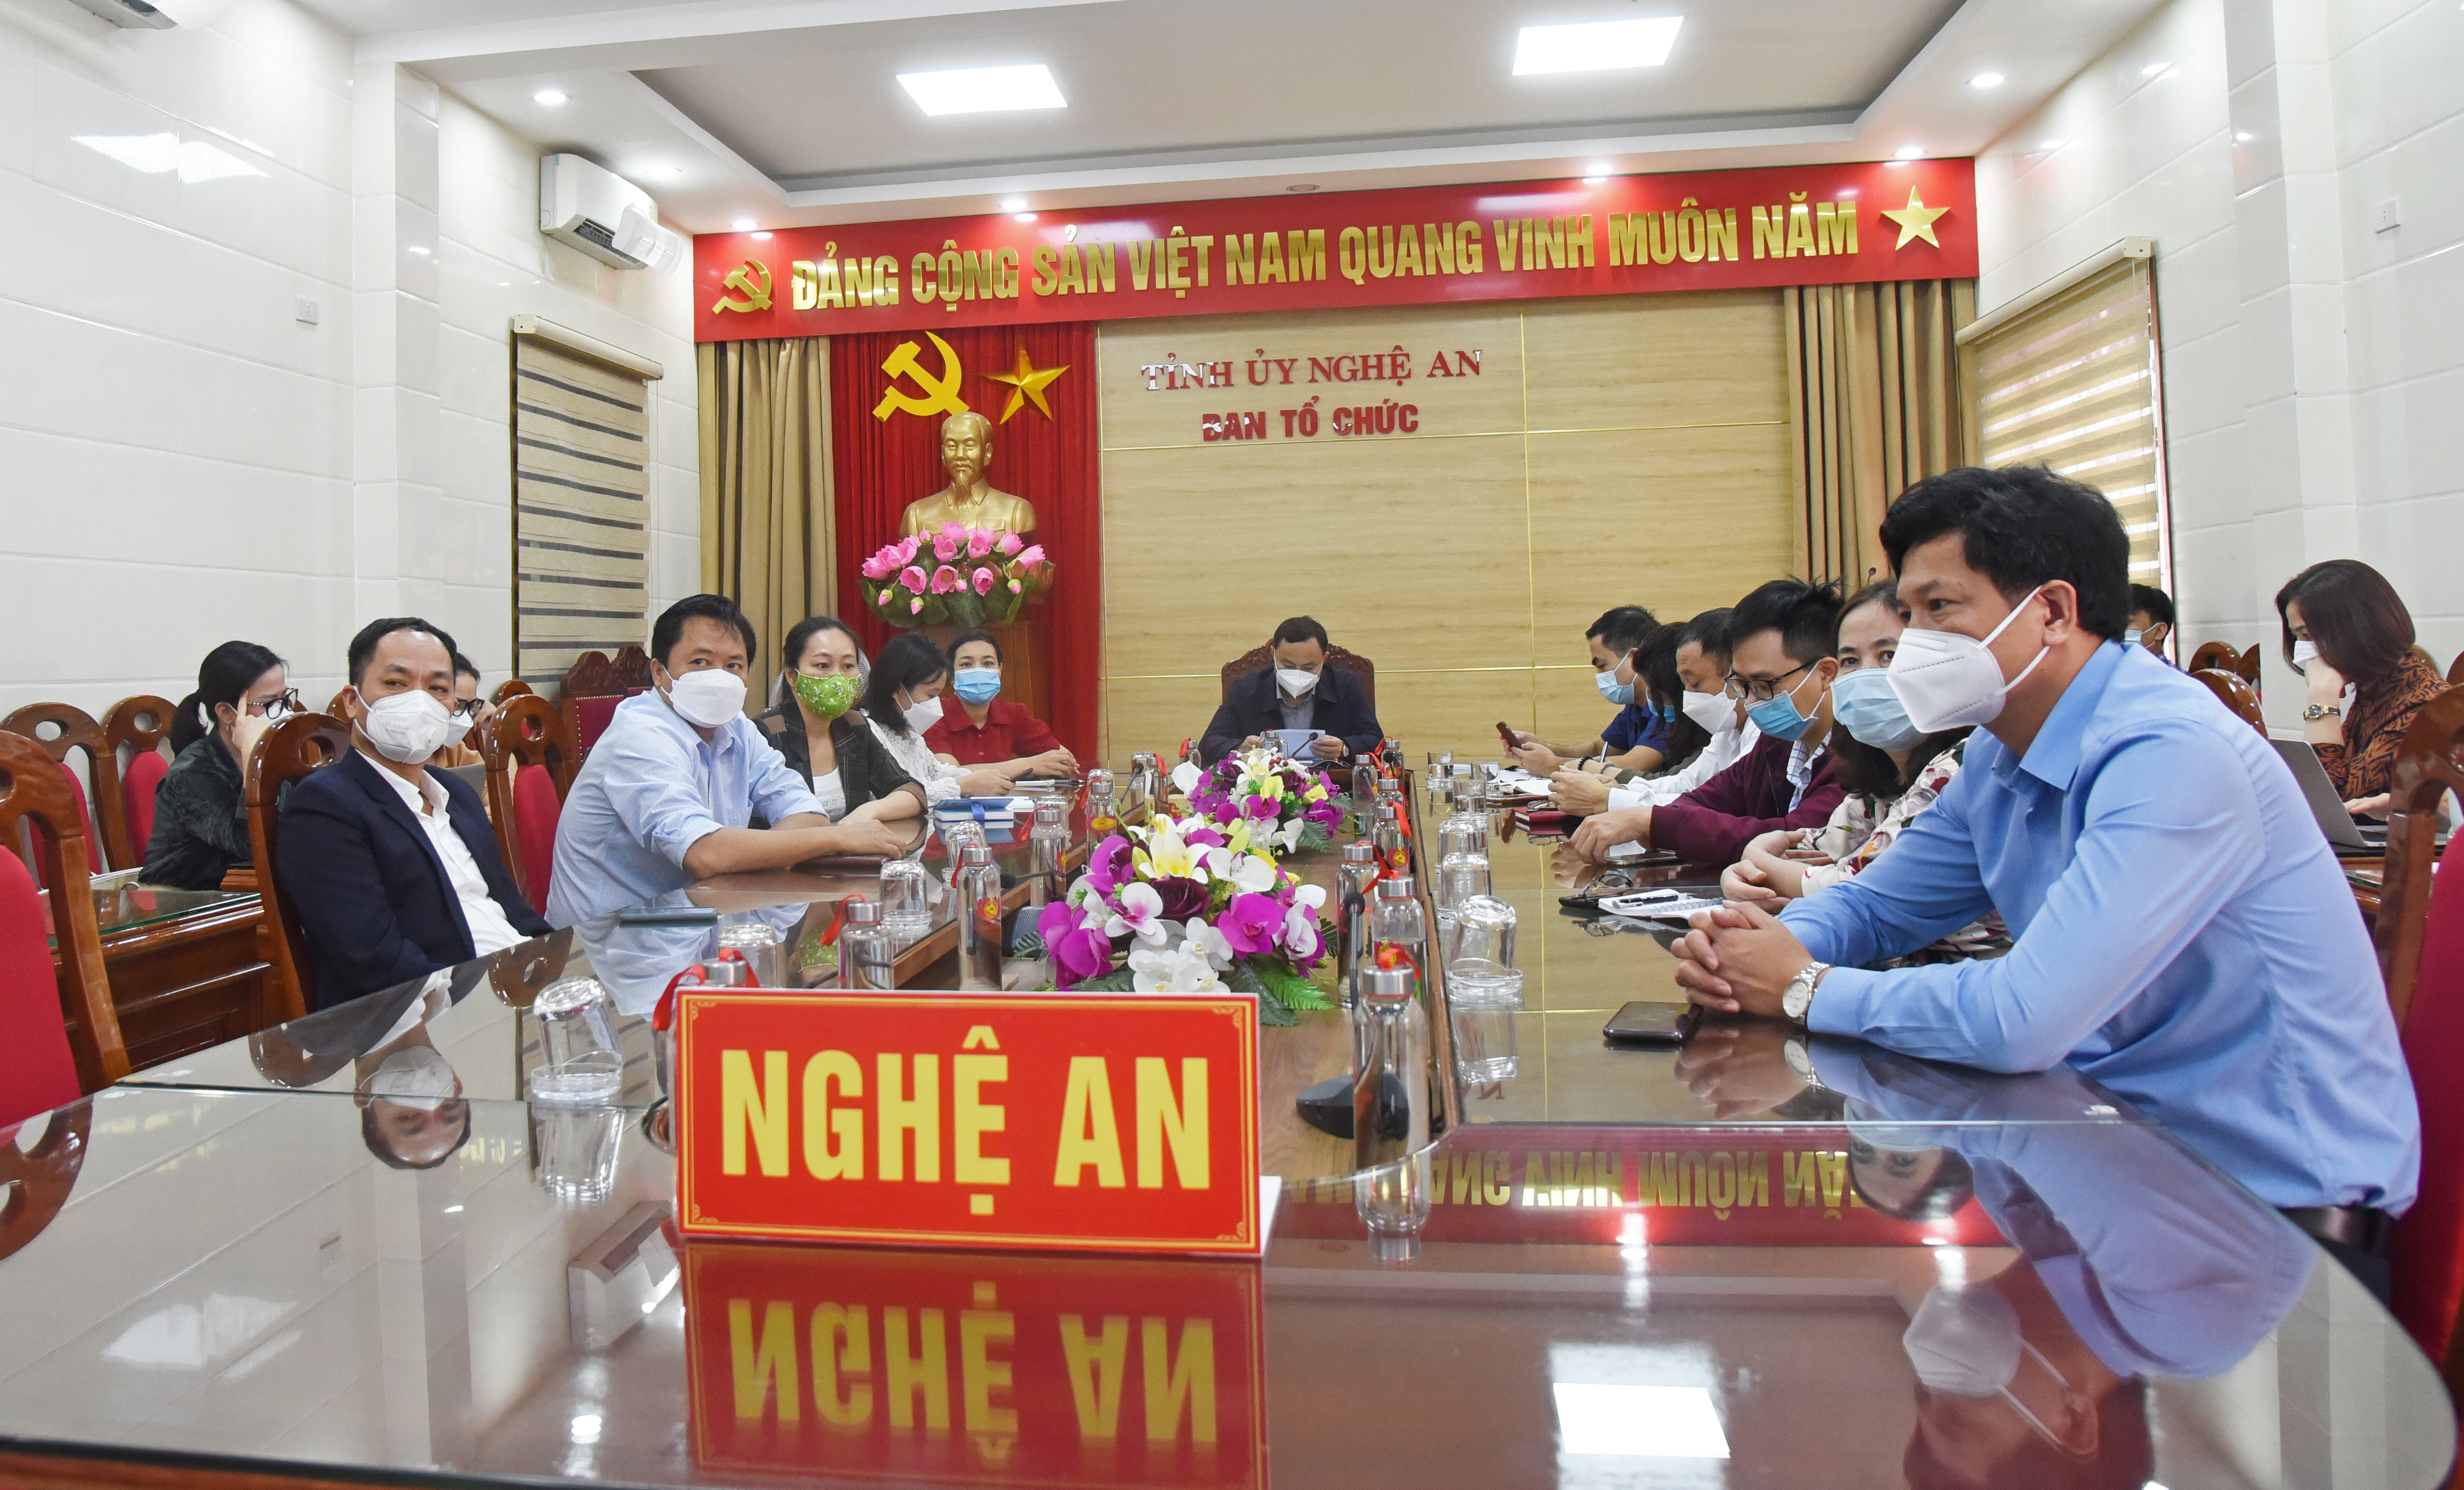 Các đại biểu dự hội nghị tại điểm cầu tỉnh Nghệ An. Ảnh: TG